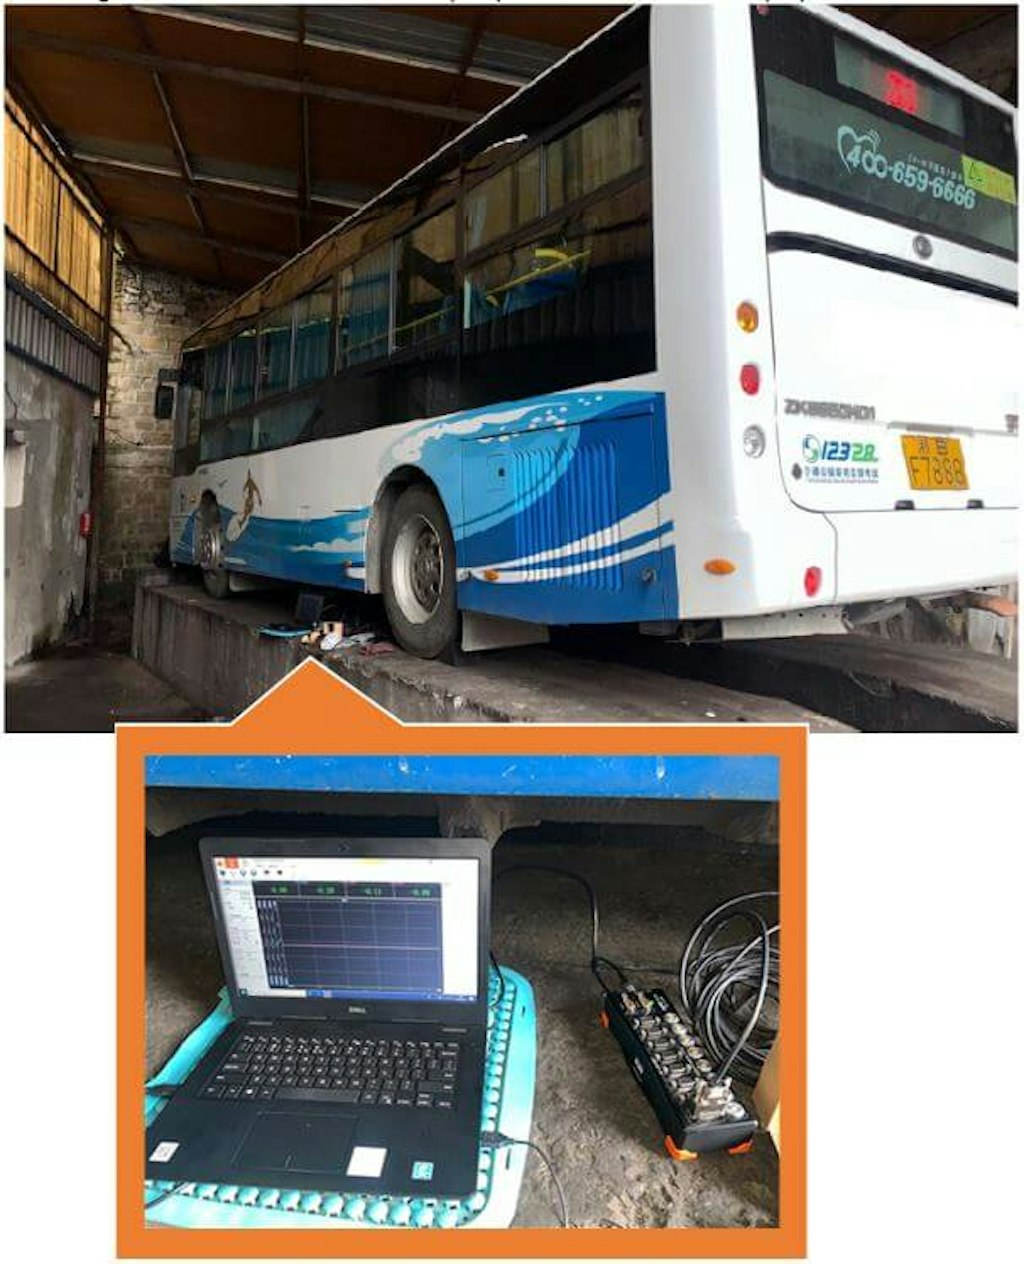 Figura 4. La location del test è l’officina riparazioni del cliente - Un DEWE-43A e un laptop posizionati sotto l'autobus.